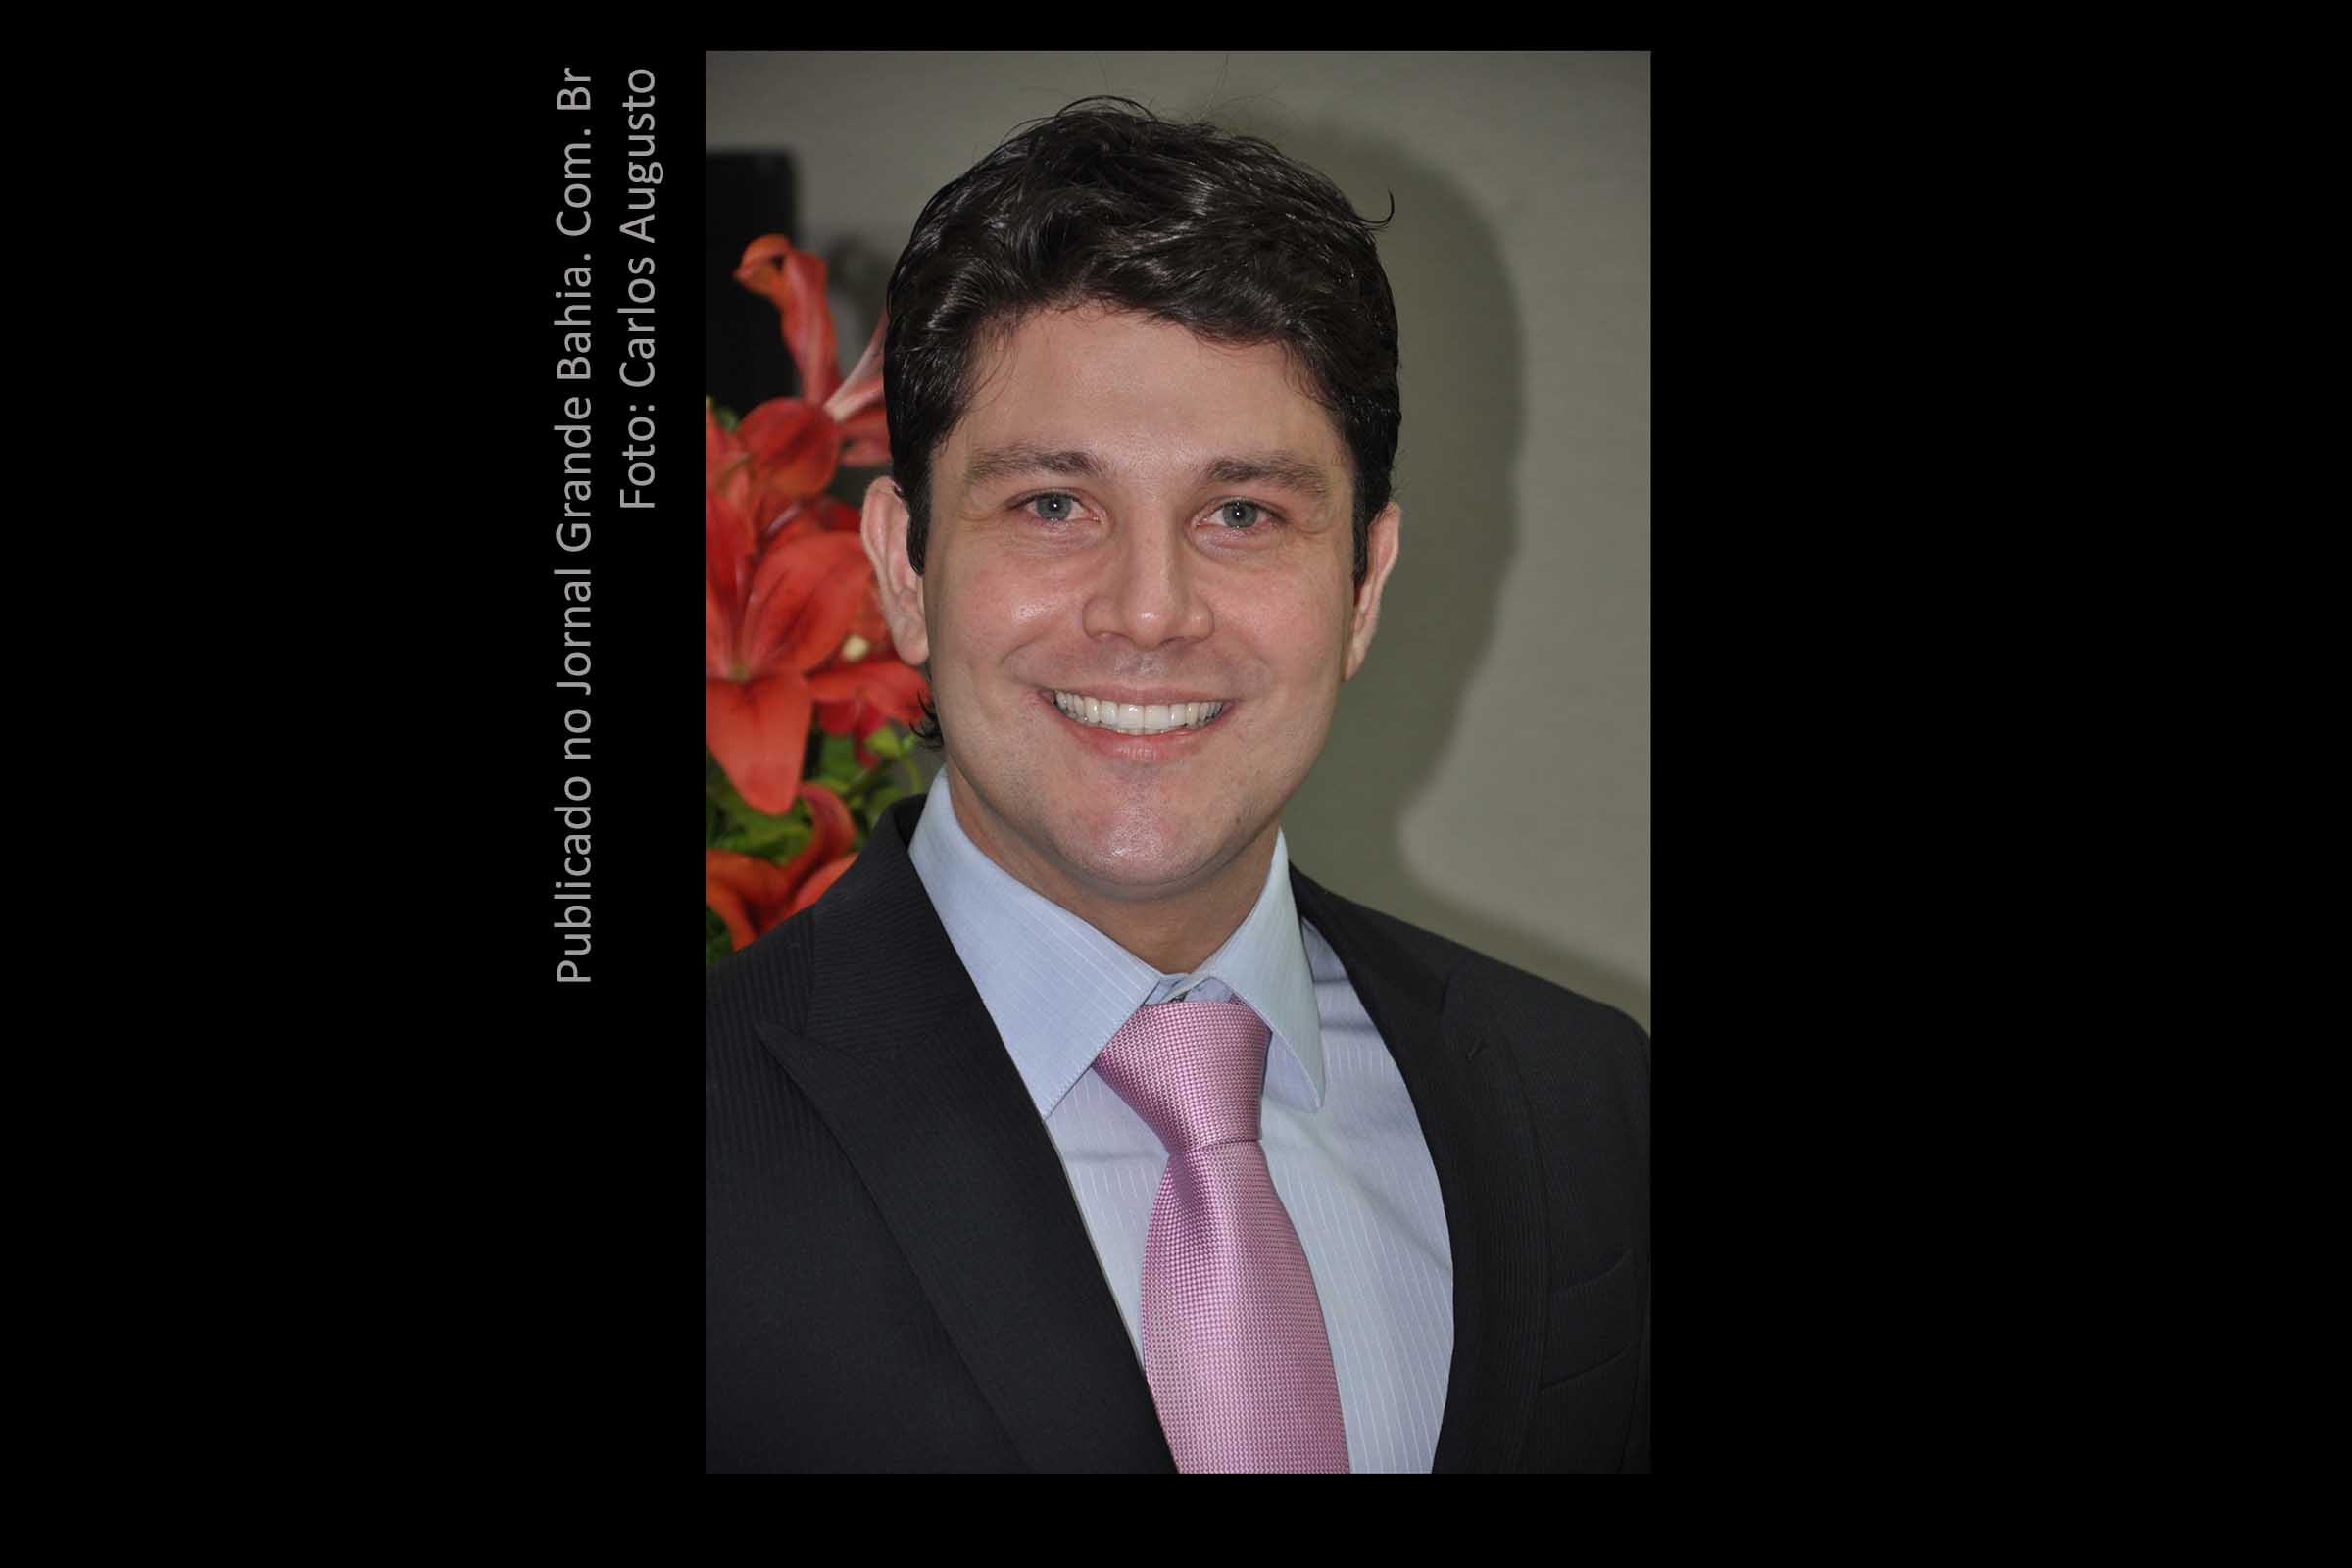 Alberto Pinto Cordeiro (CRM 23646) é medico especialista em dermatologia pela Universidade de São Paulo (USP), pós-graduado em dermatocosmiatria pela Faculdade de Medicina do ABC Paulista, e Especialista em Dermatologia pela Sociedade Brasileira de Dermatologia.